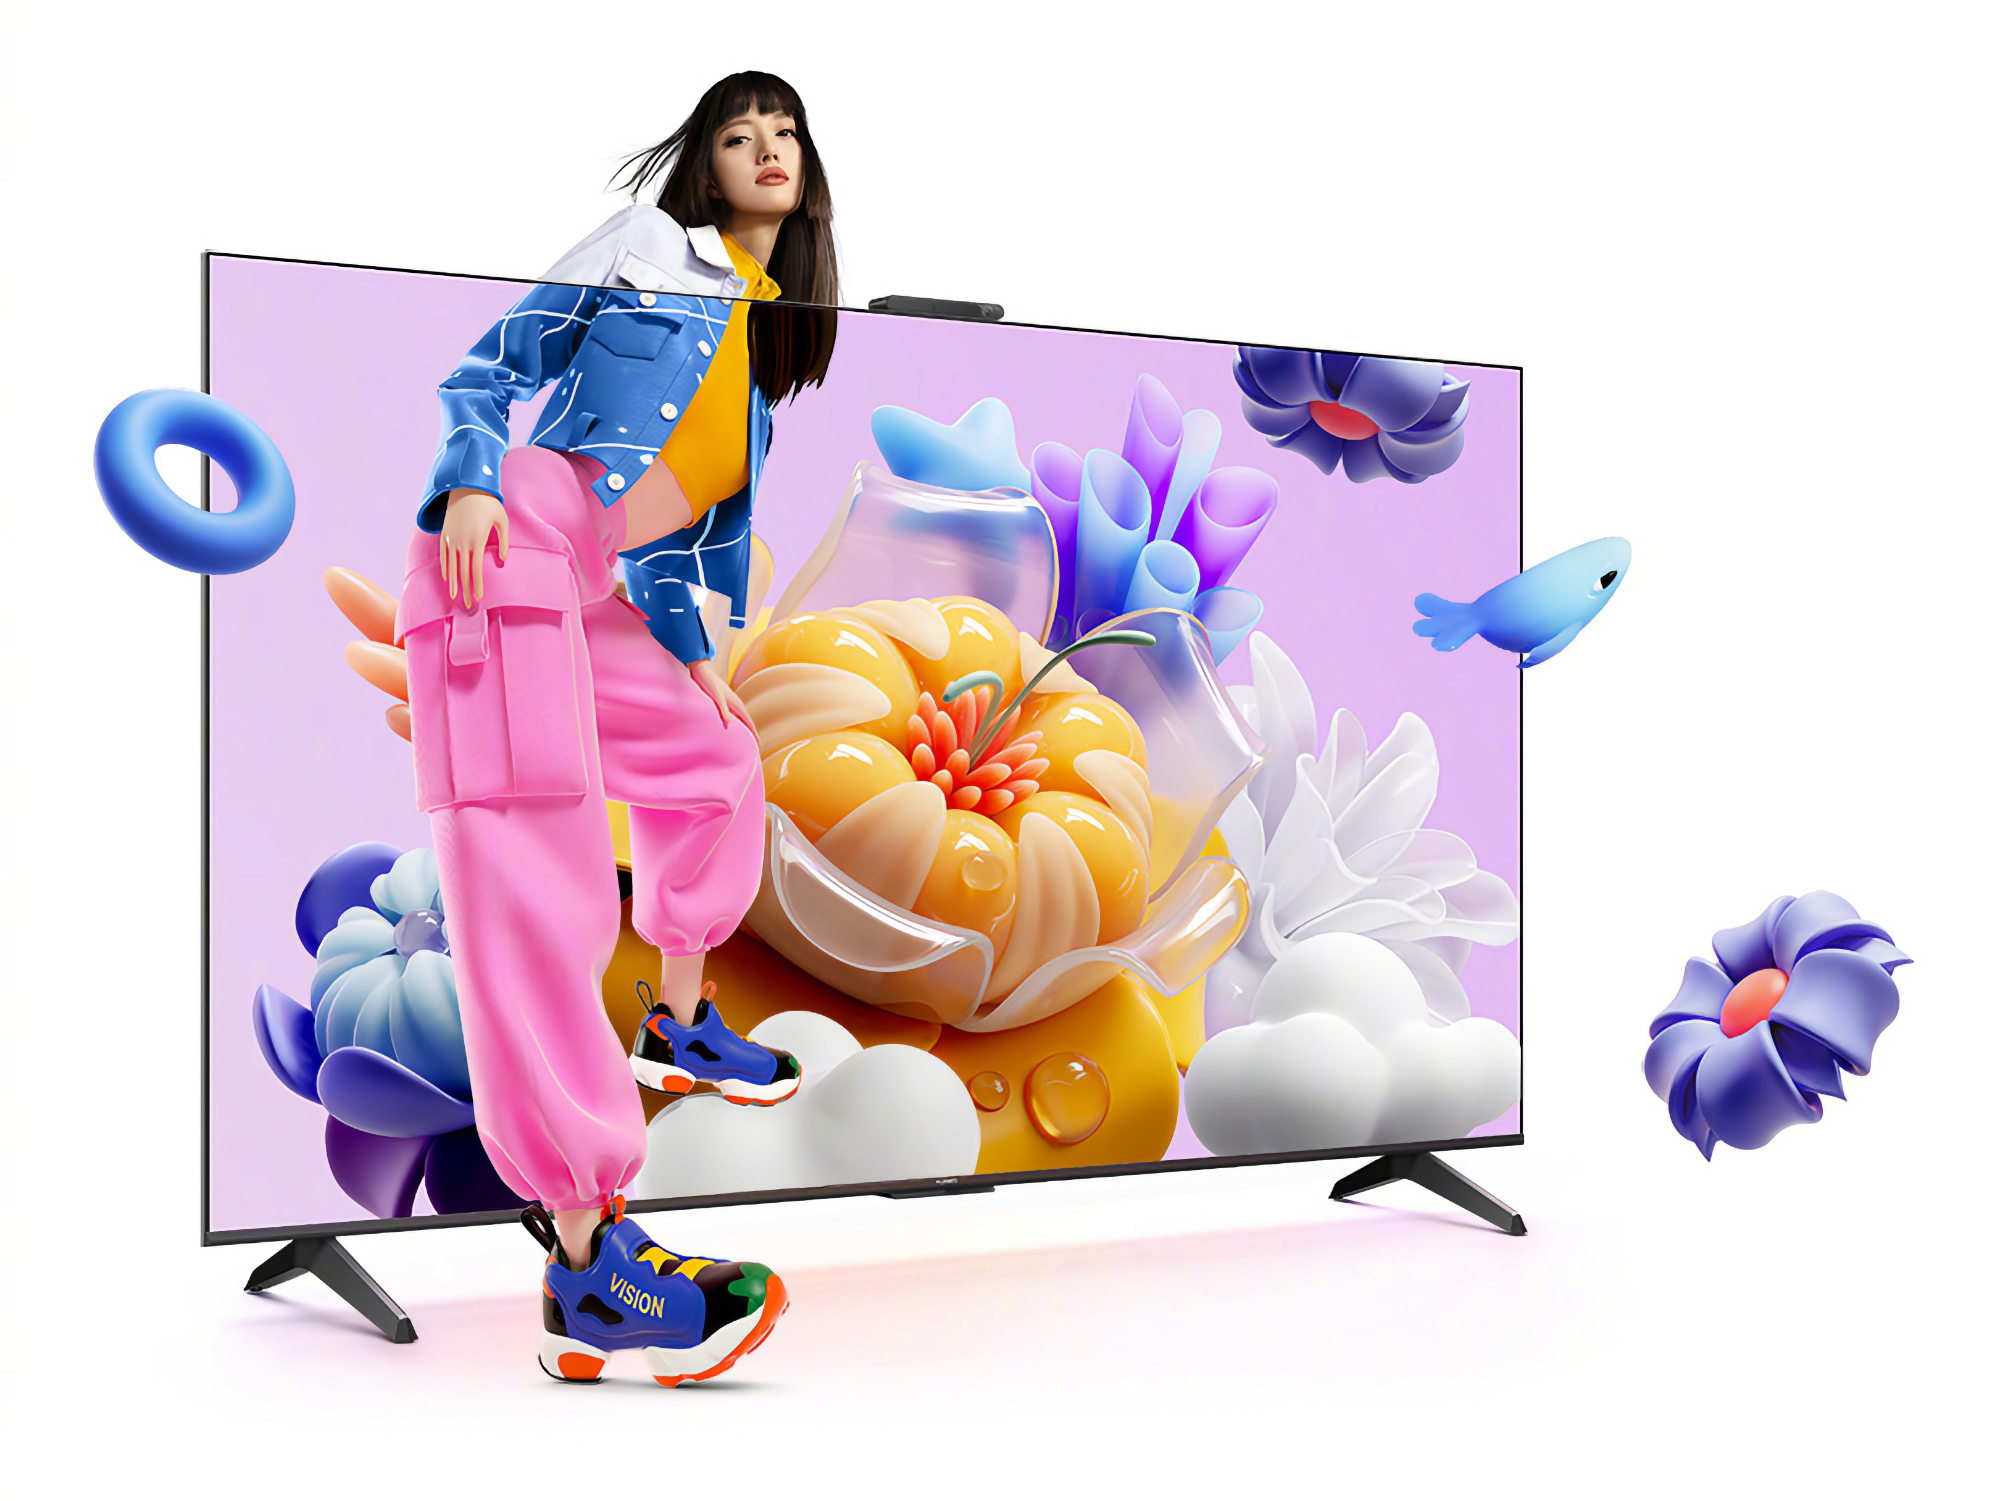 Huawei Vision Smart TV SE3 : une gamme de téléviseurs intelligents avec des écrans 4K à 120 Hz et HarmonyOS embarqué à partir de 340 dollars